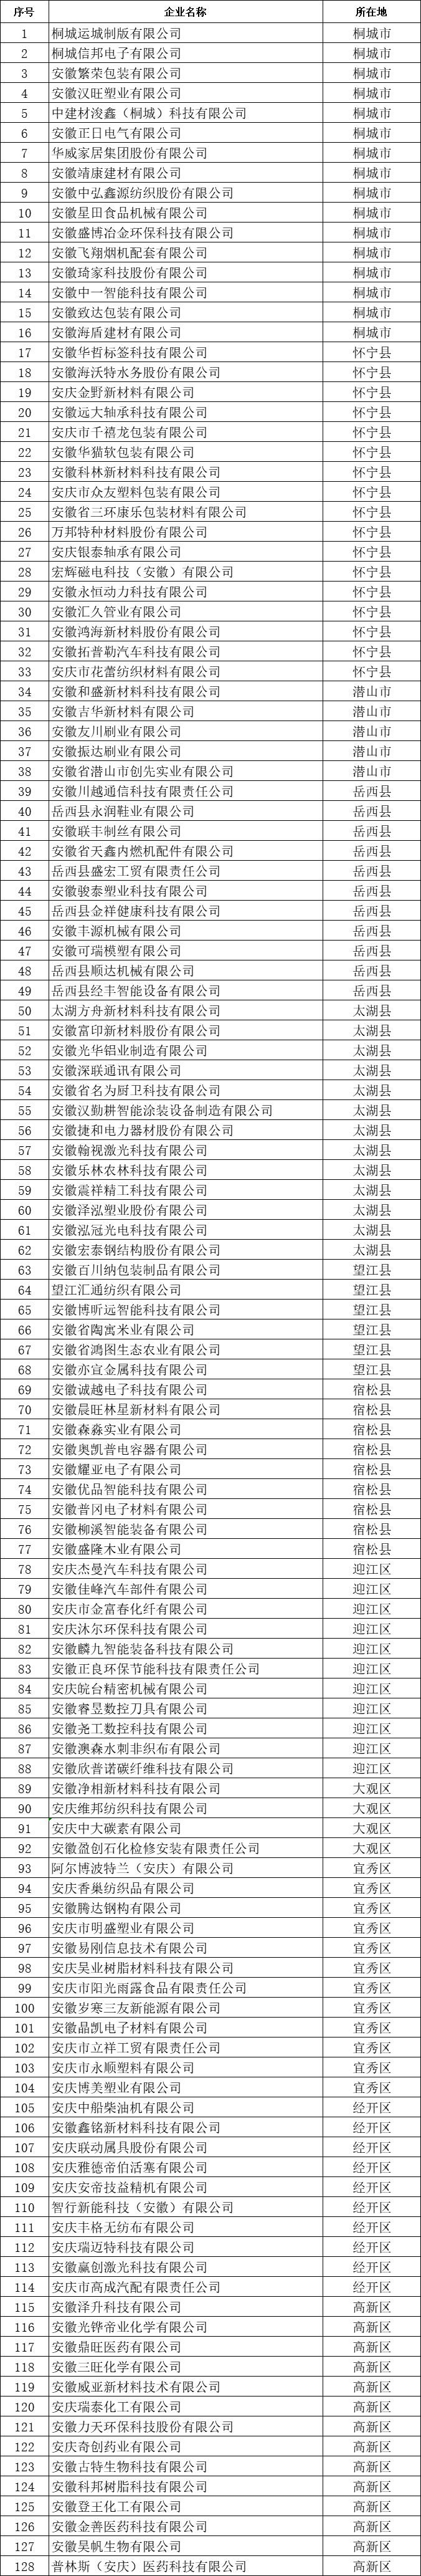 安庆市创新型中小企业公示名单